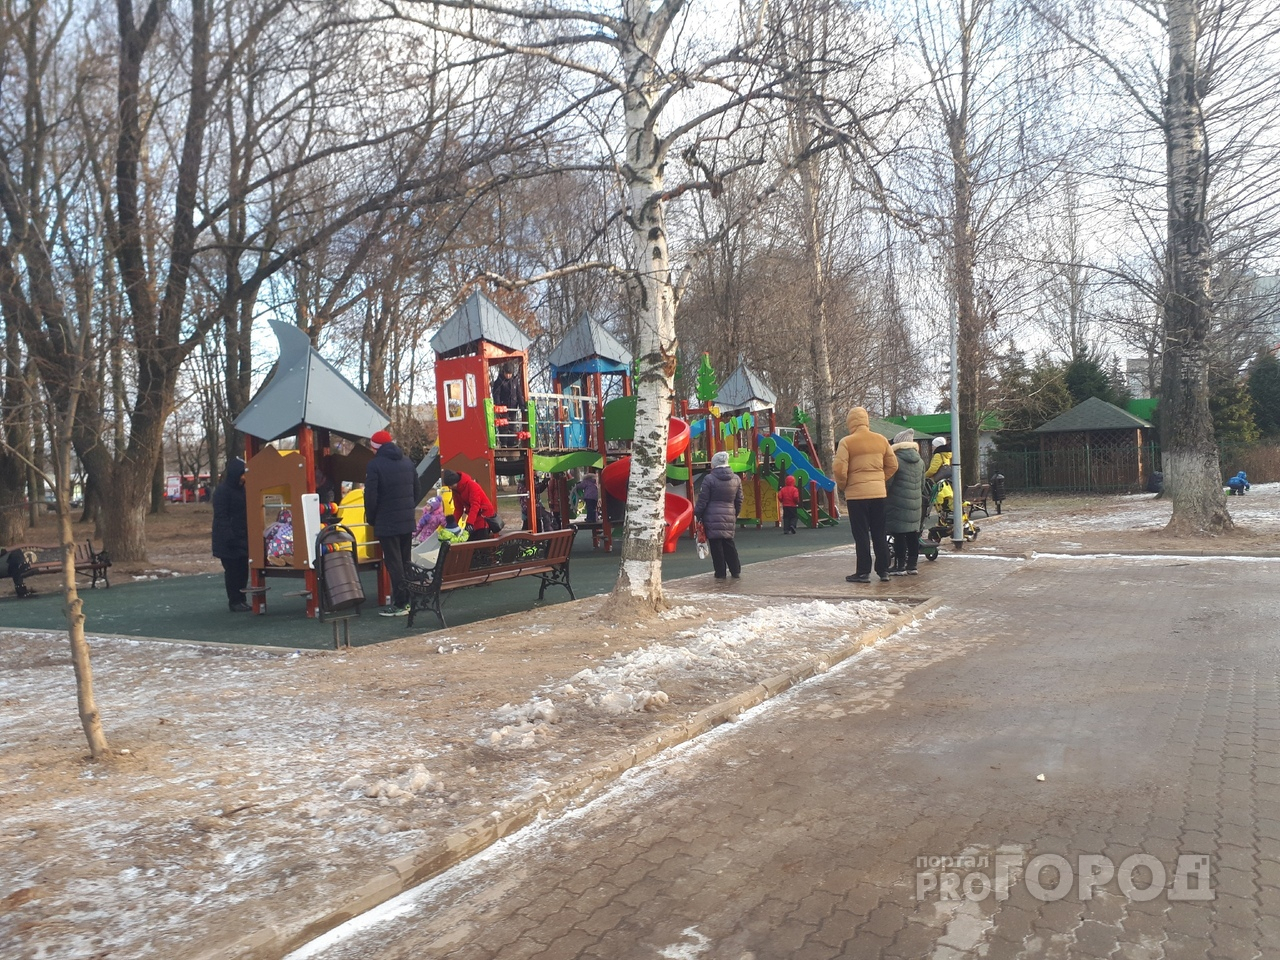 "Загнобят воспиталки": о поборах в детских садах рассказали родители из Ярославля